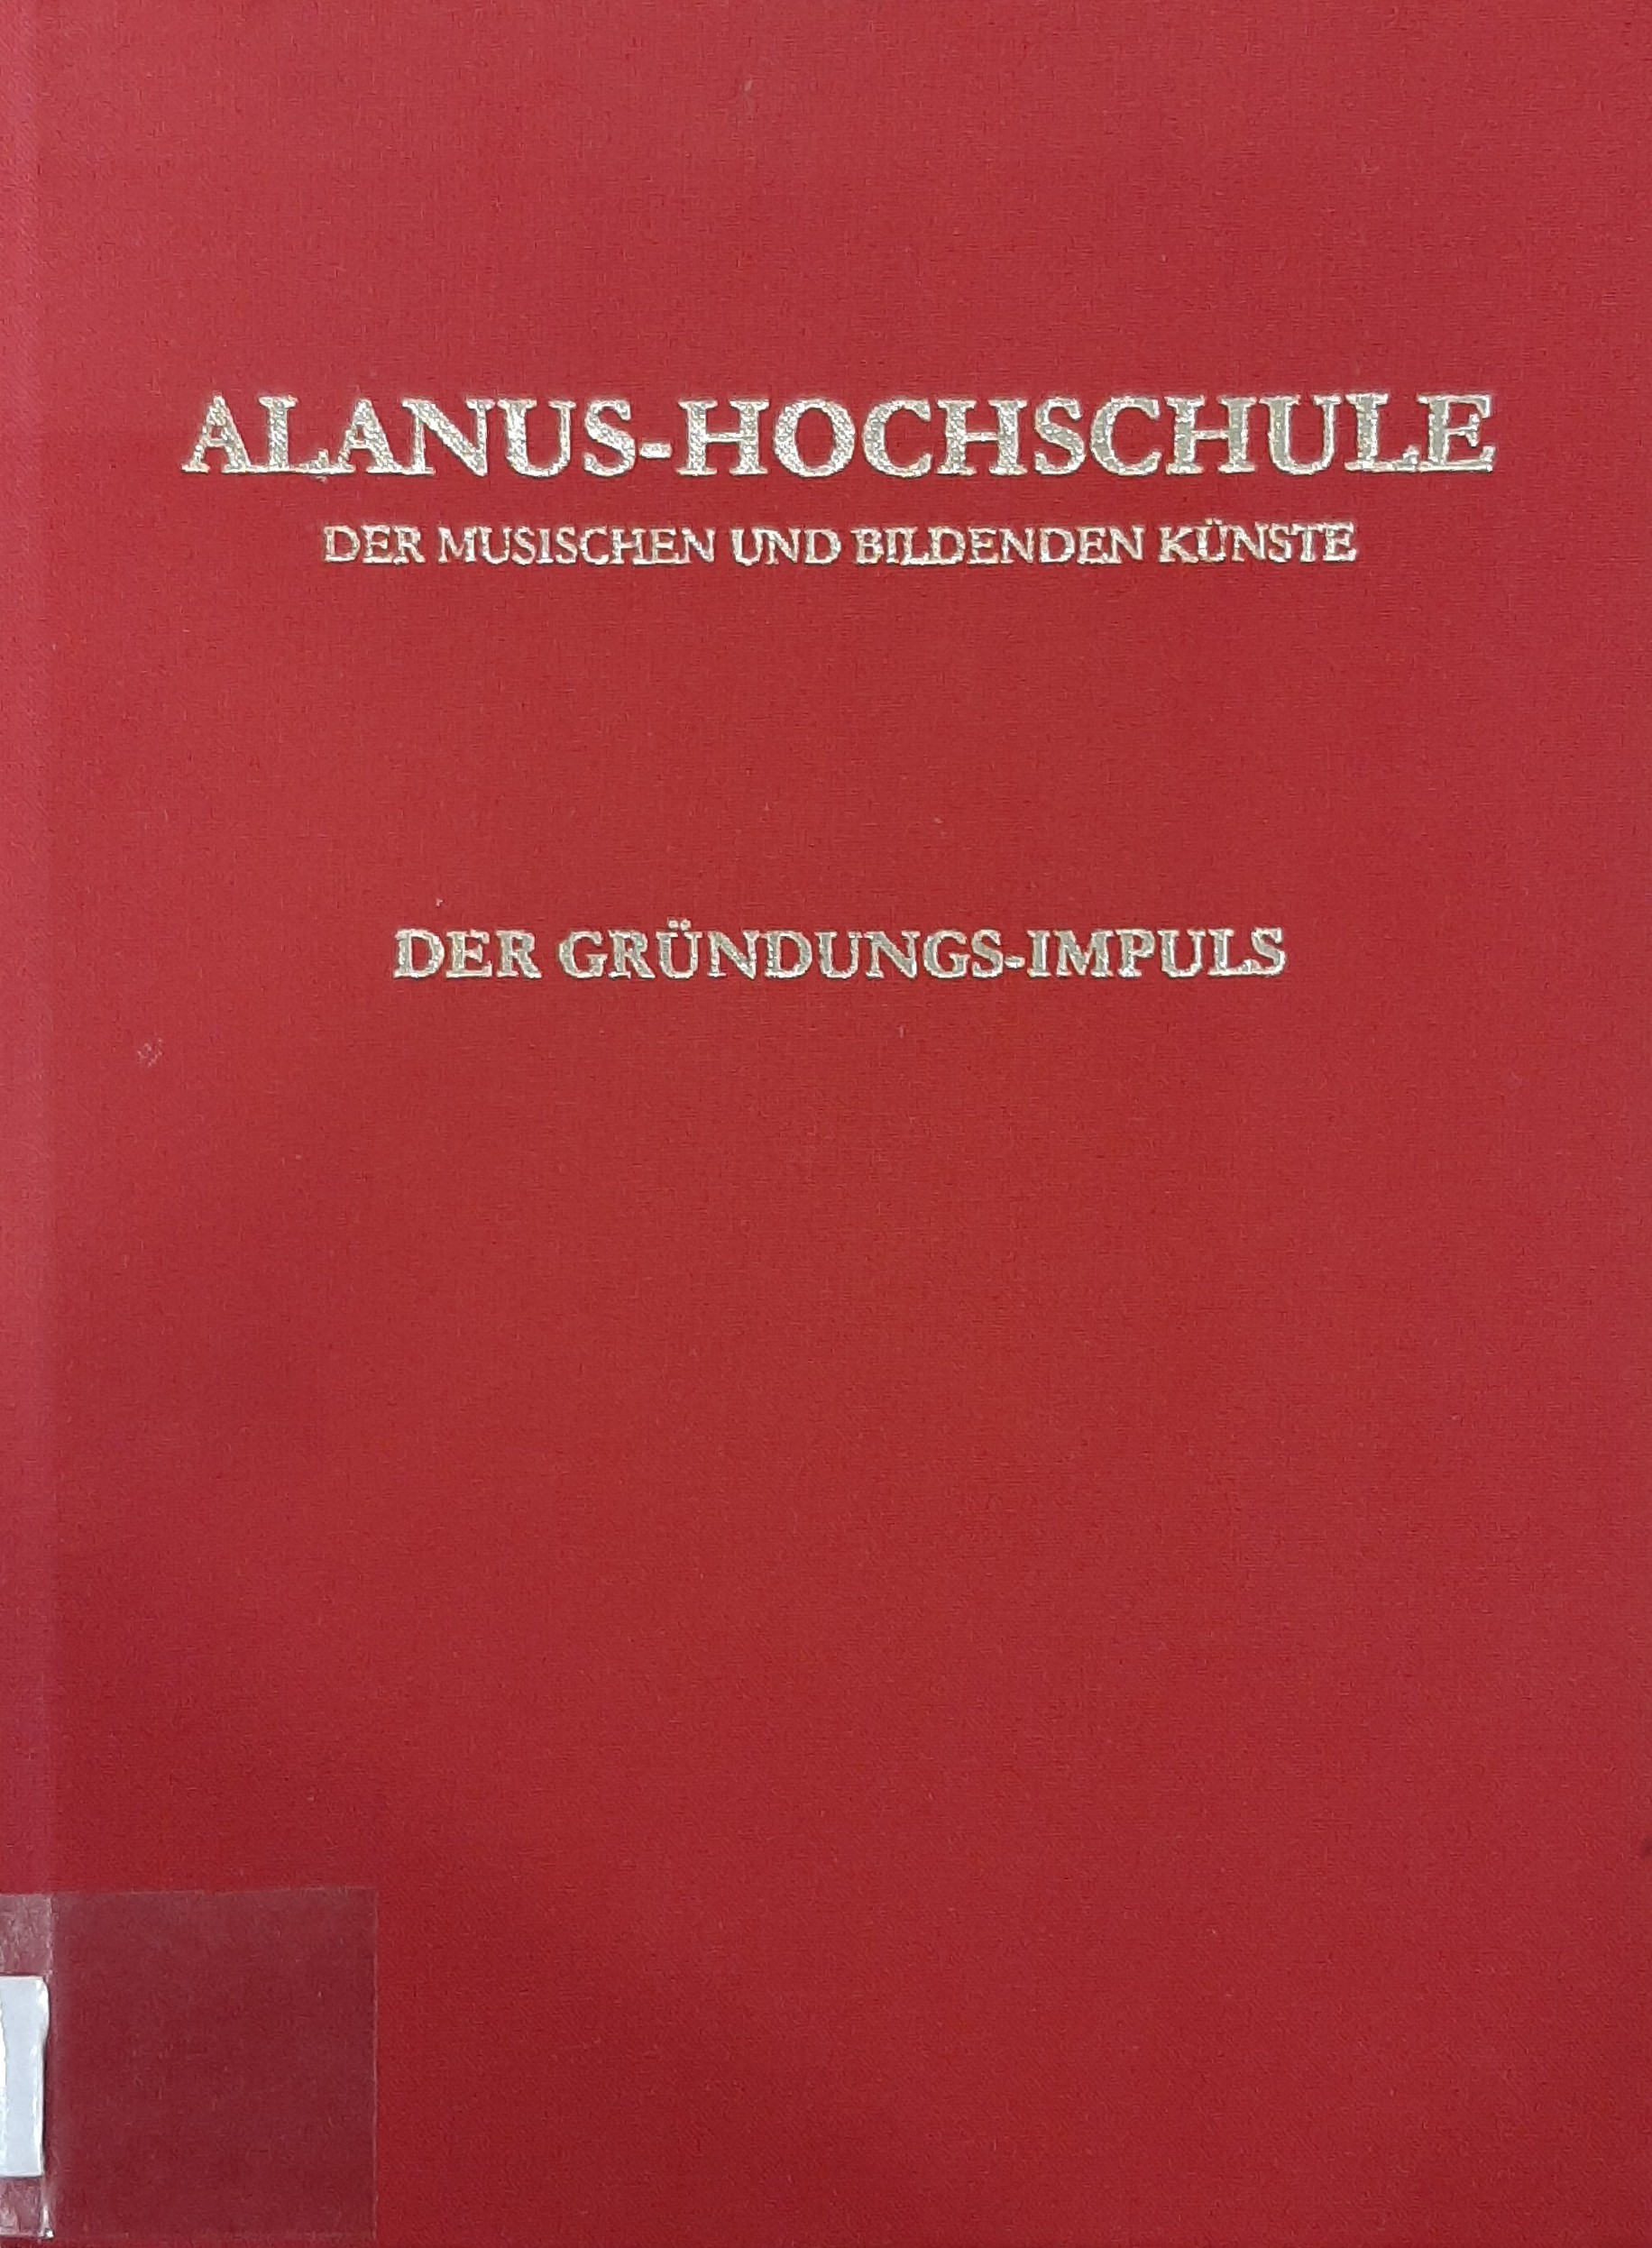 Alanus-Hochschule der musischen und bildenden Künste Alfter